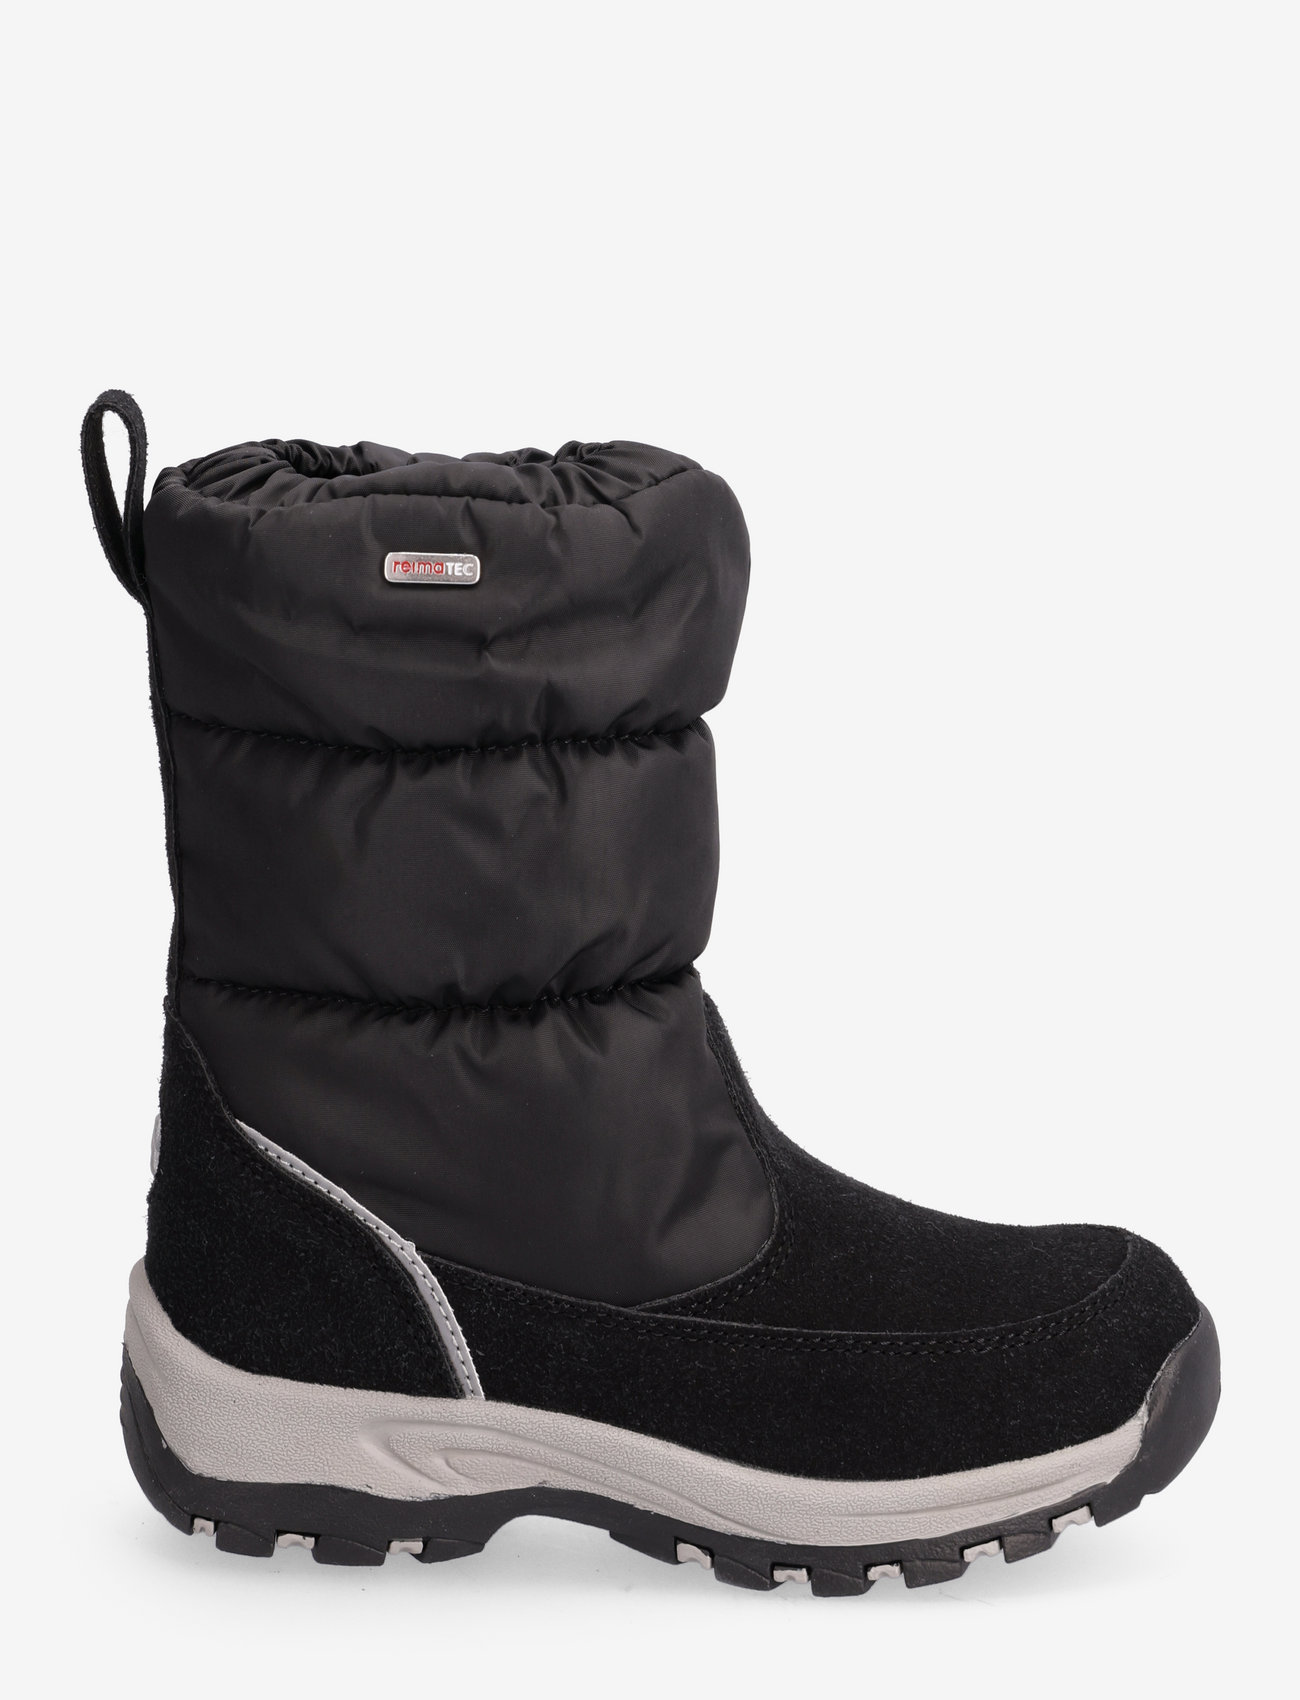 Reima - Reimatec winter boots, Vimpeli - black - 1